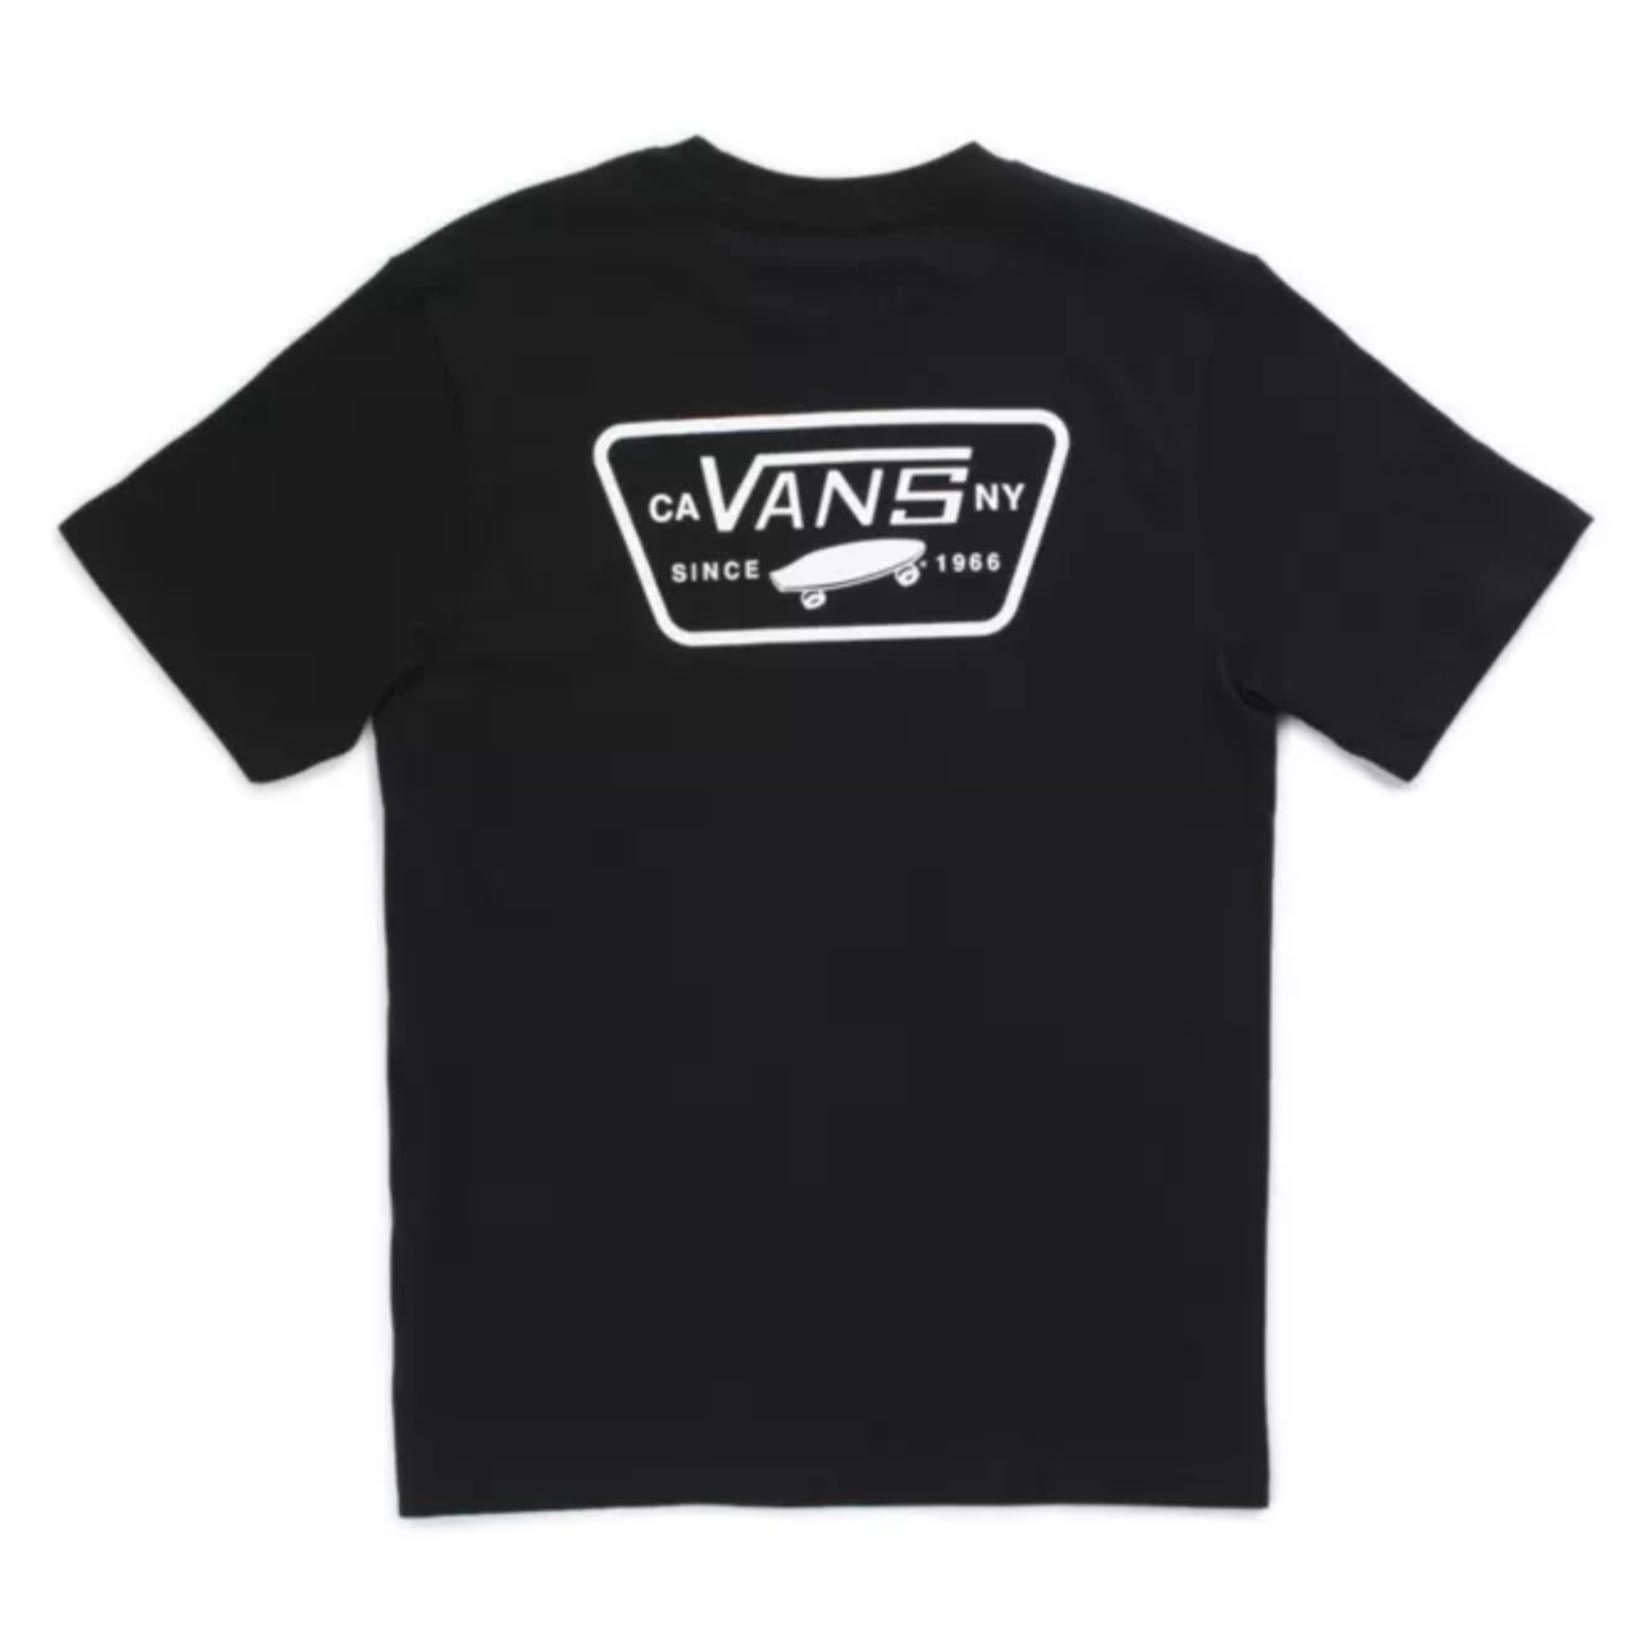 Vans Vans Full Patch Back Boys T-Shirt - Black / White